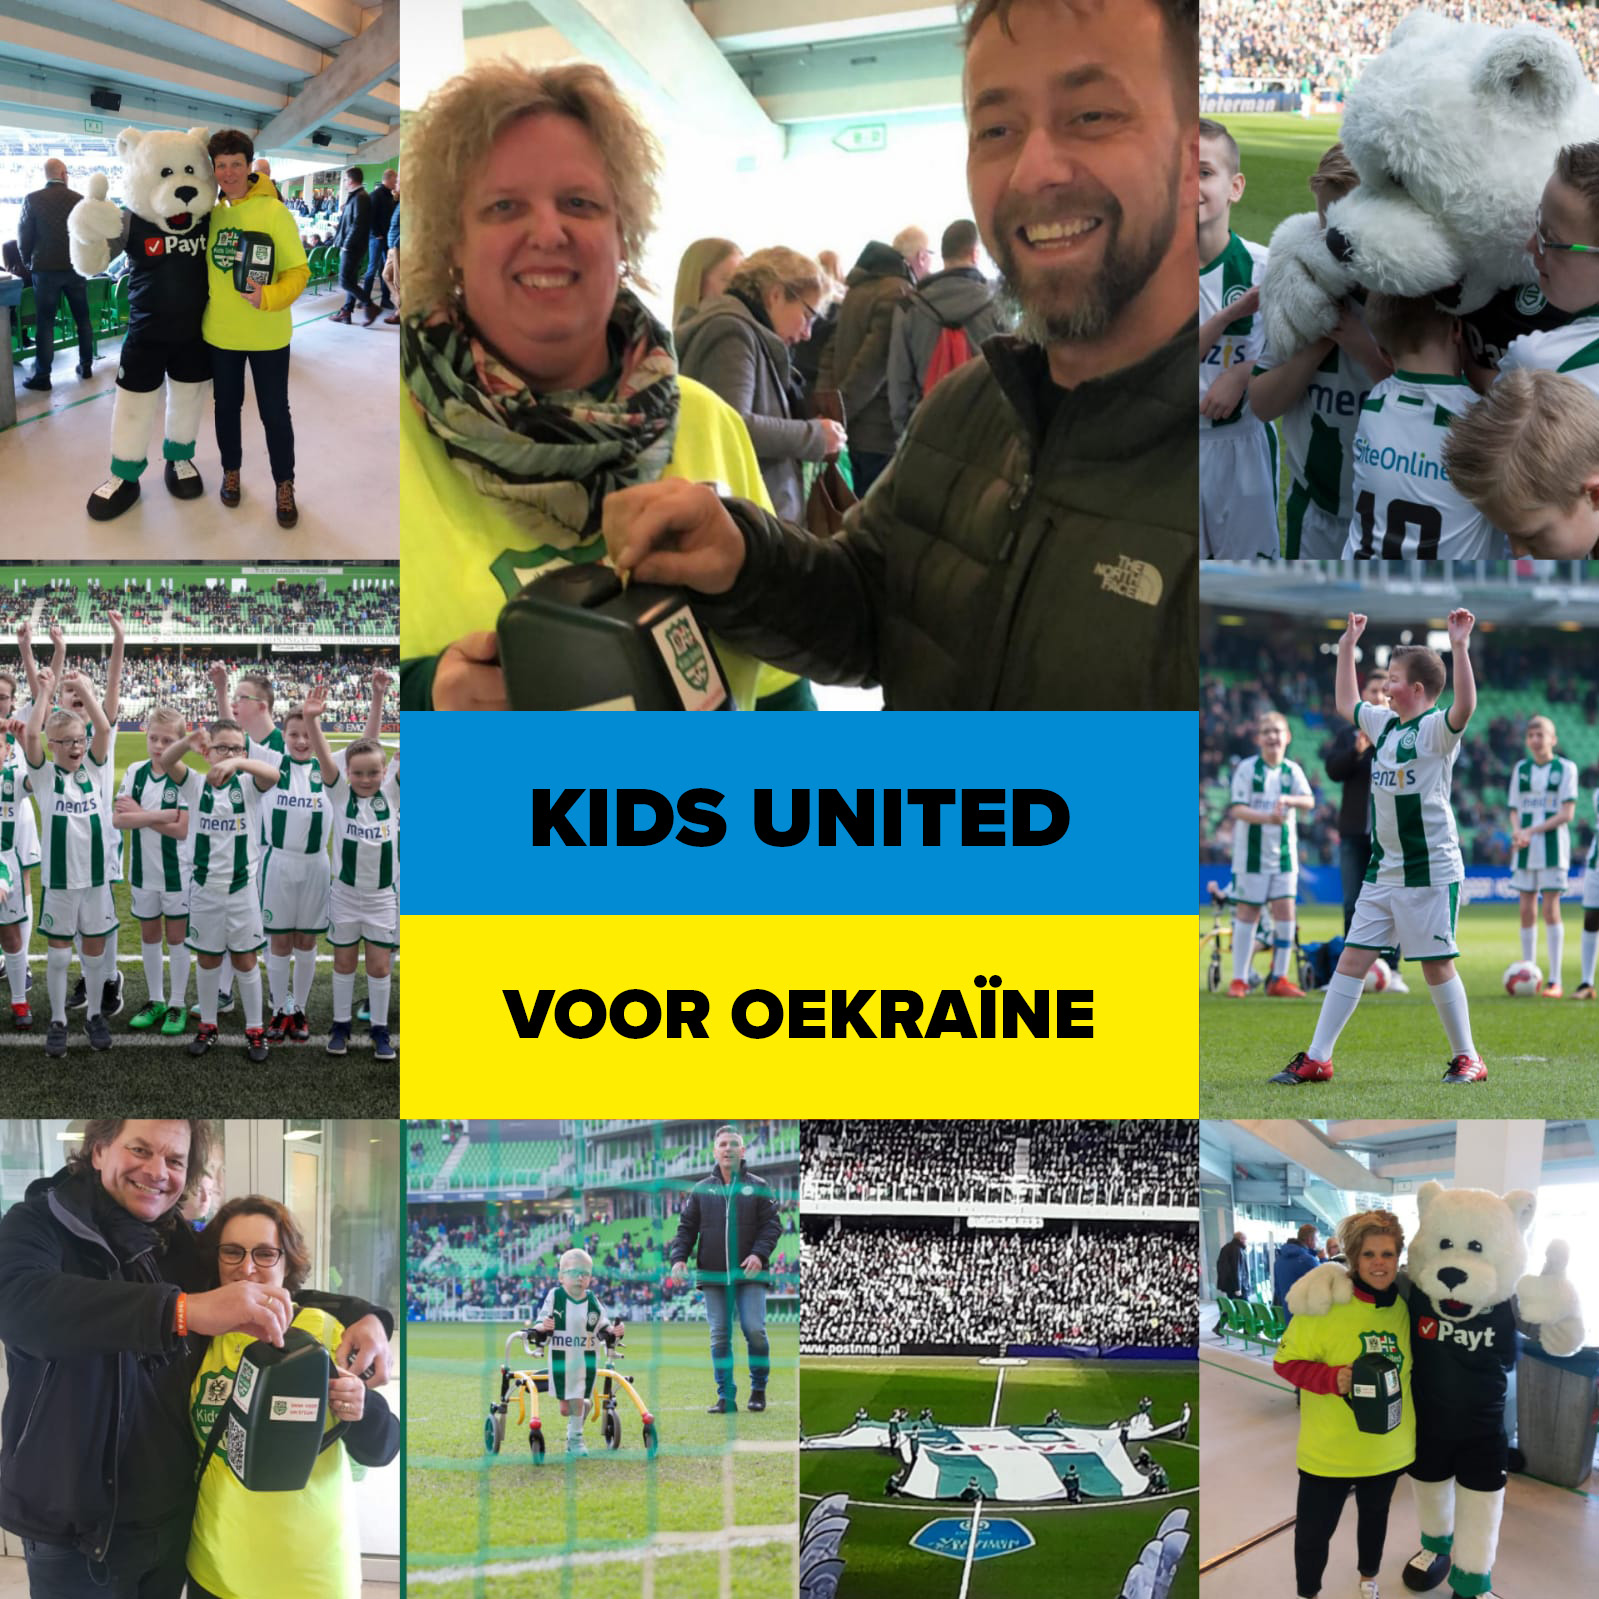 Oekraine Kids United